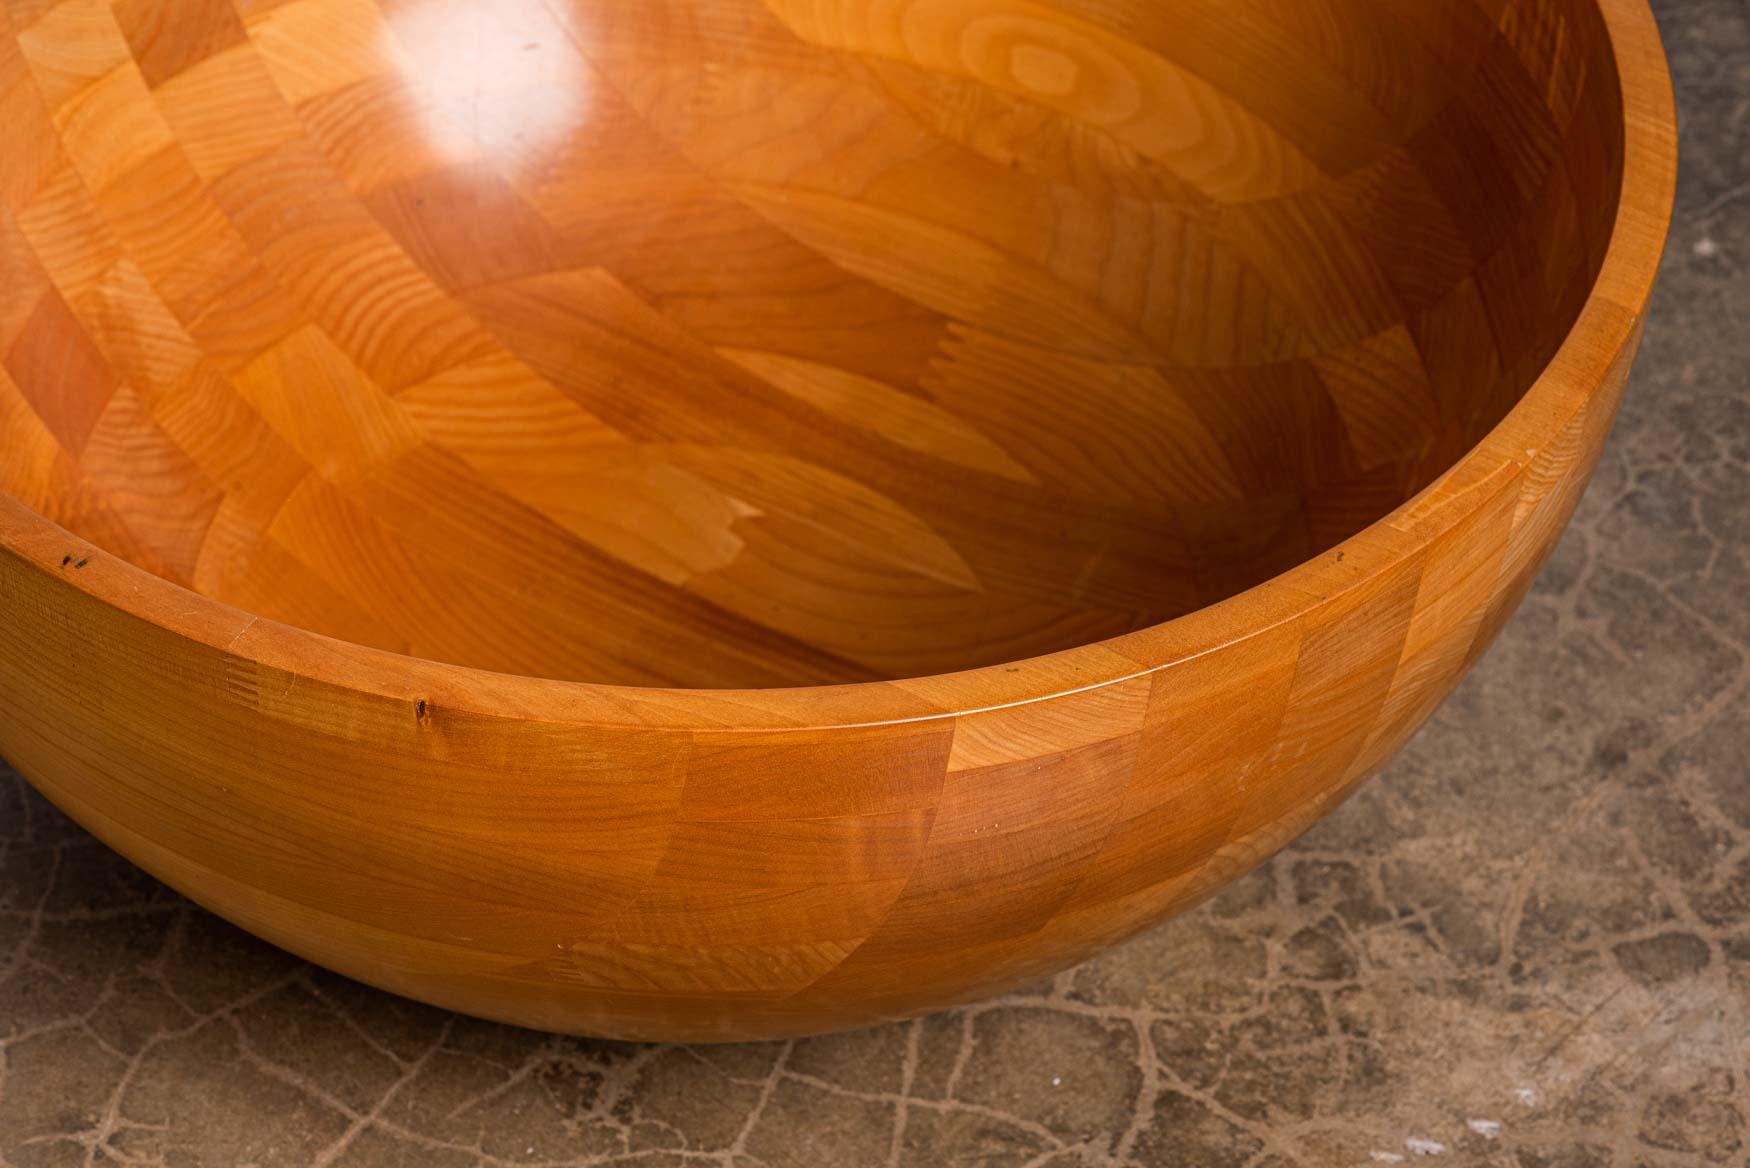 Maple Monumental Turned Wood Bowl